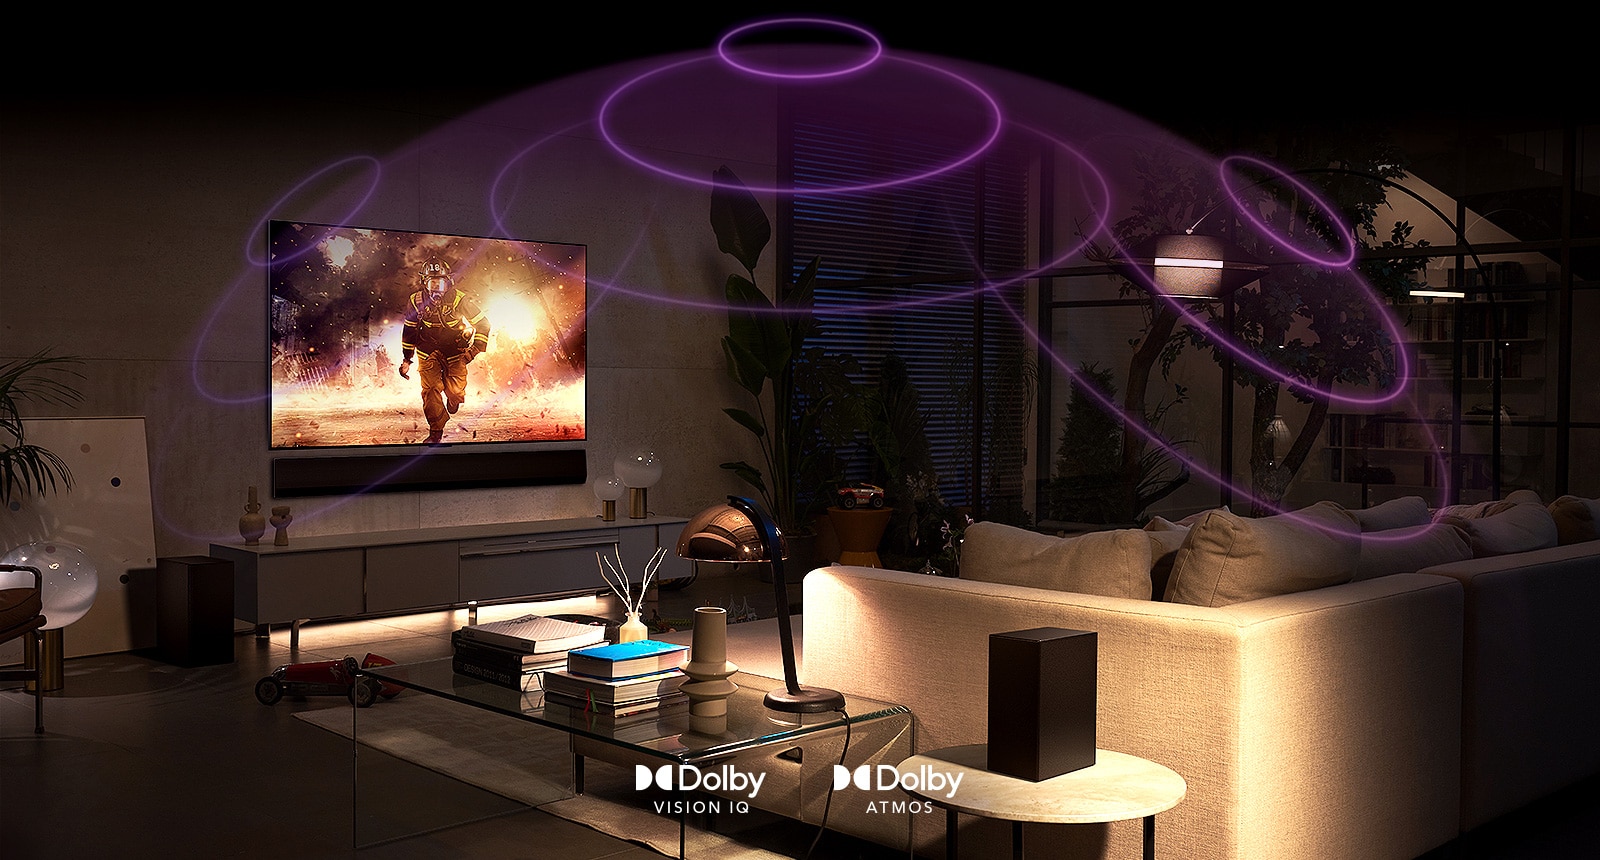 صورة لتلفزيون LG OLED في غرفة يعرض أحد أفلام الحركة. تشكل الموجات الصوتية قبة بين الأريكة والتلفزيون، مما يصور الصوت المكاني الغامر.